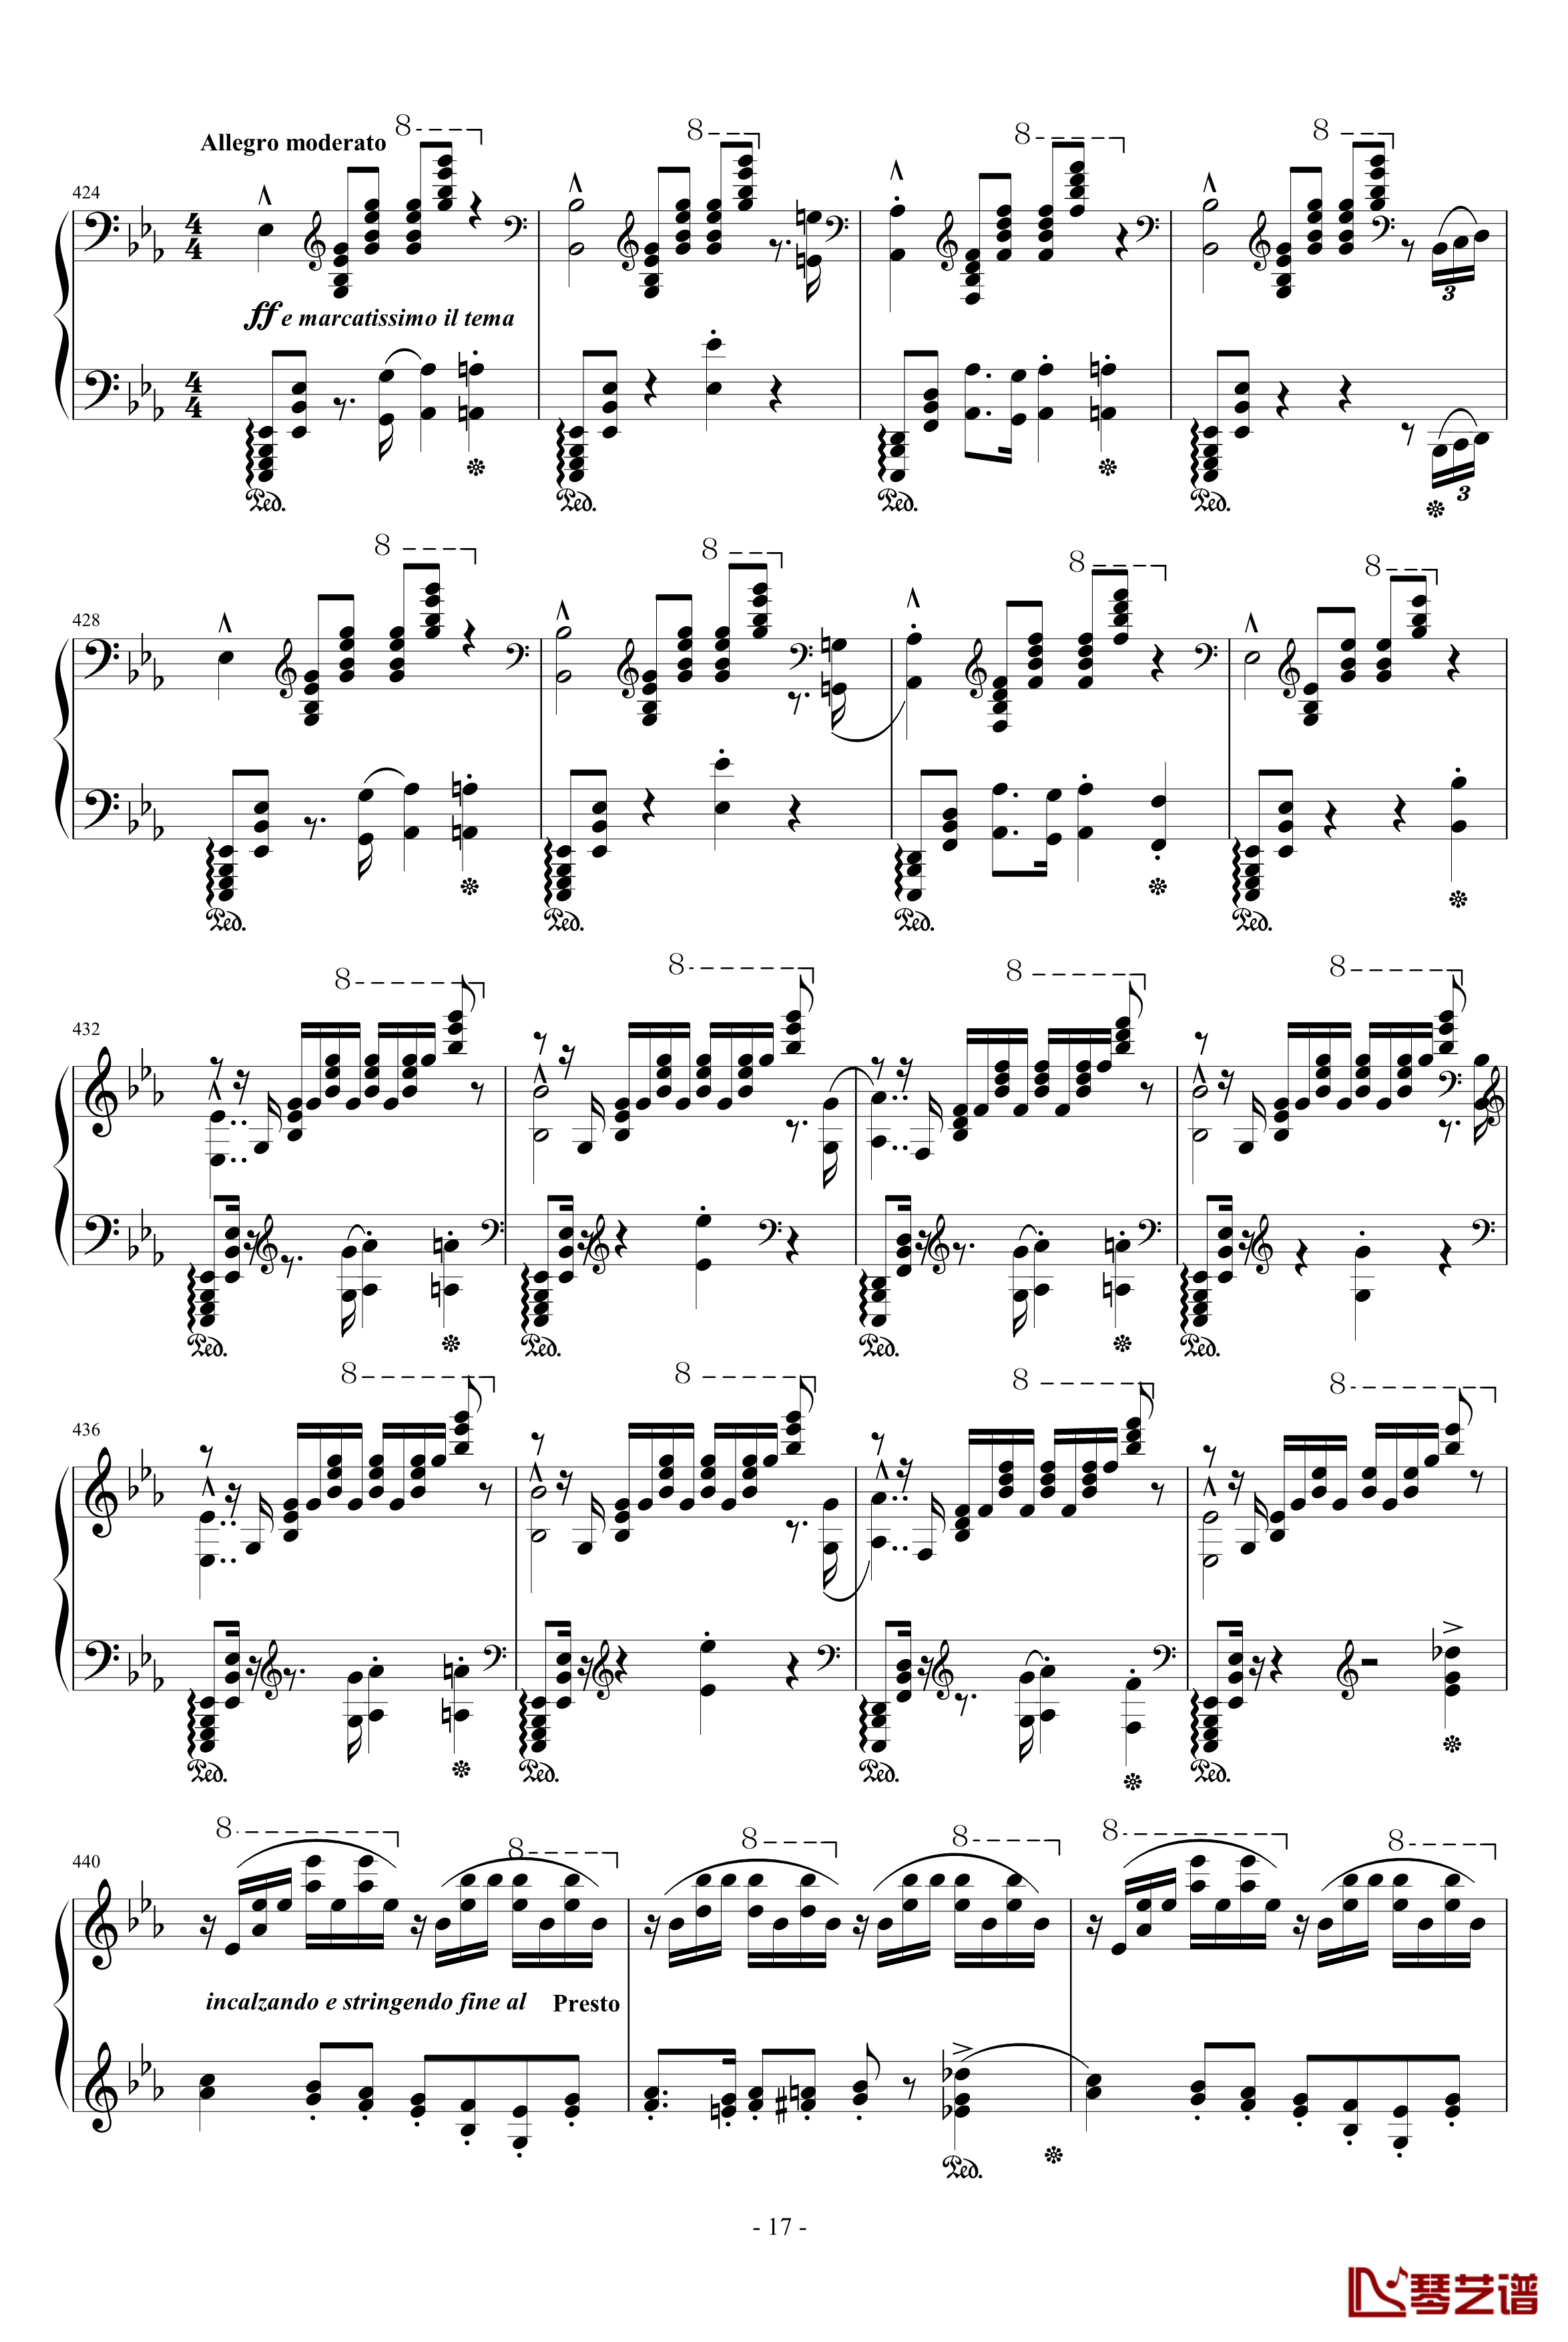 匈牙利狂想曲第9号钢琴谱-19首匈狂里篇幅最浩大、技巧最艰深的作品之一-李斯特17